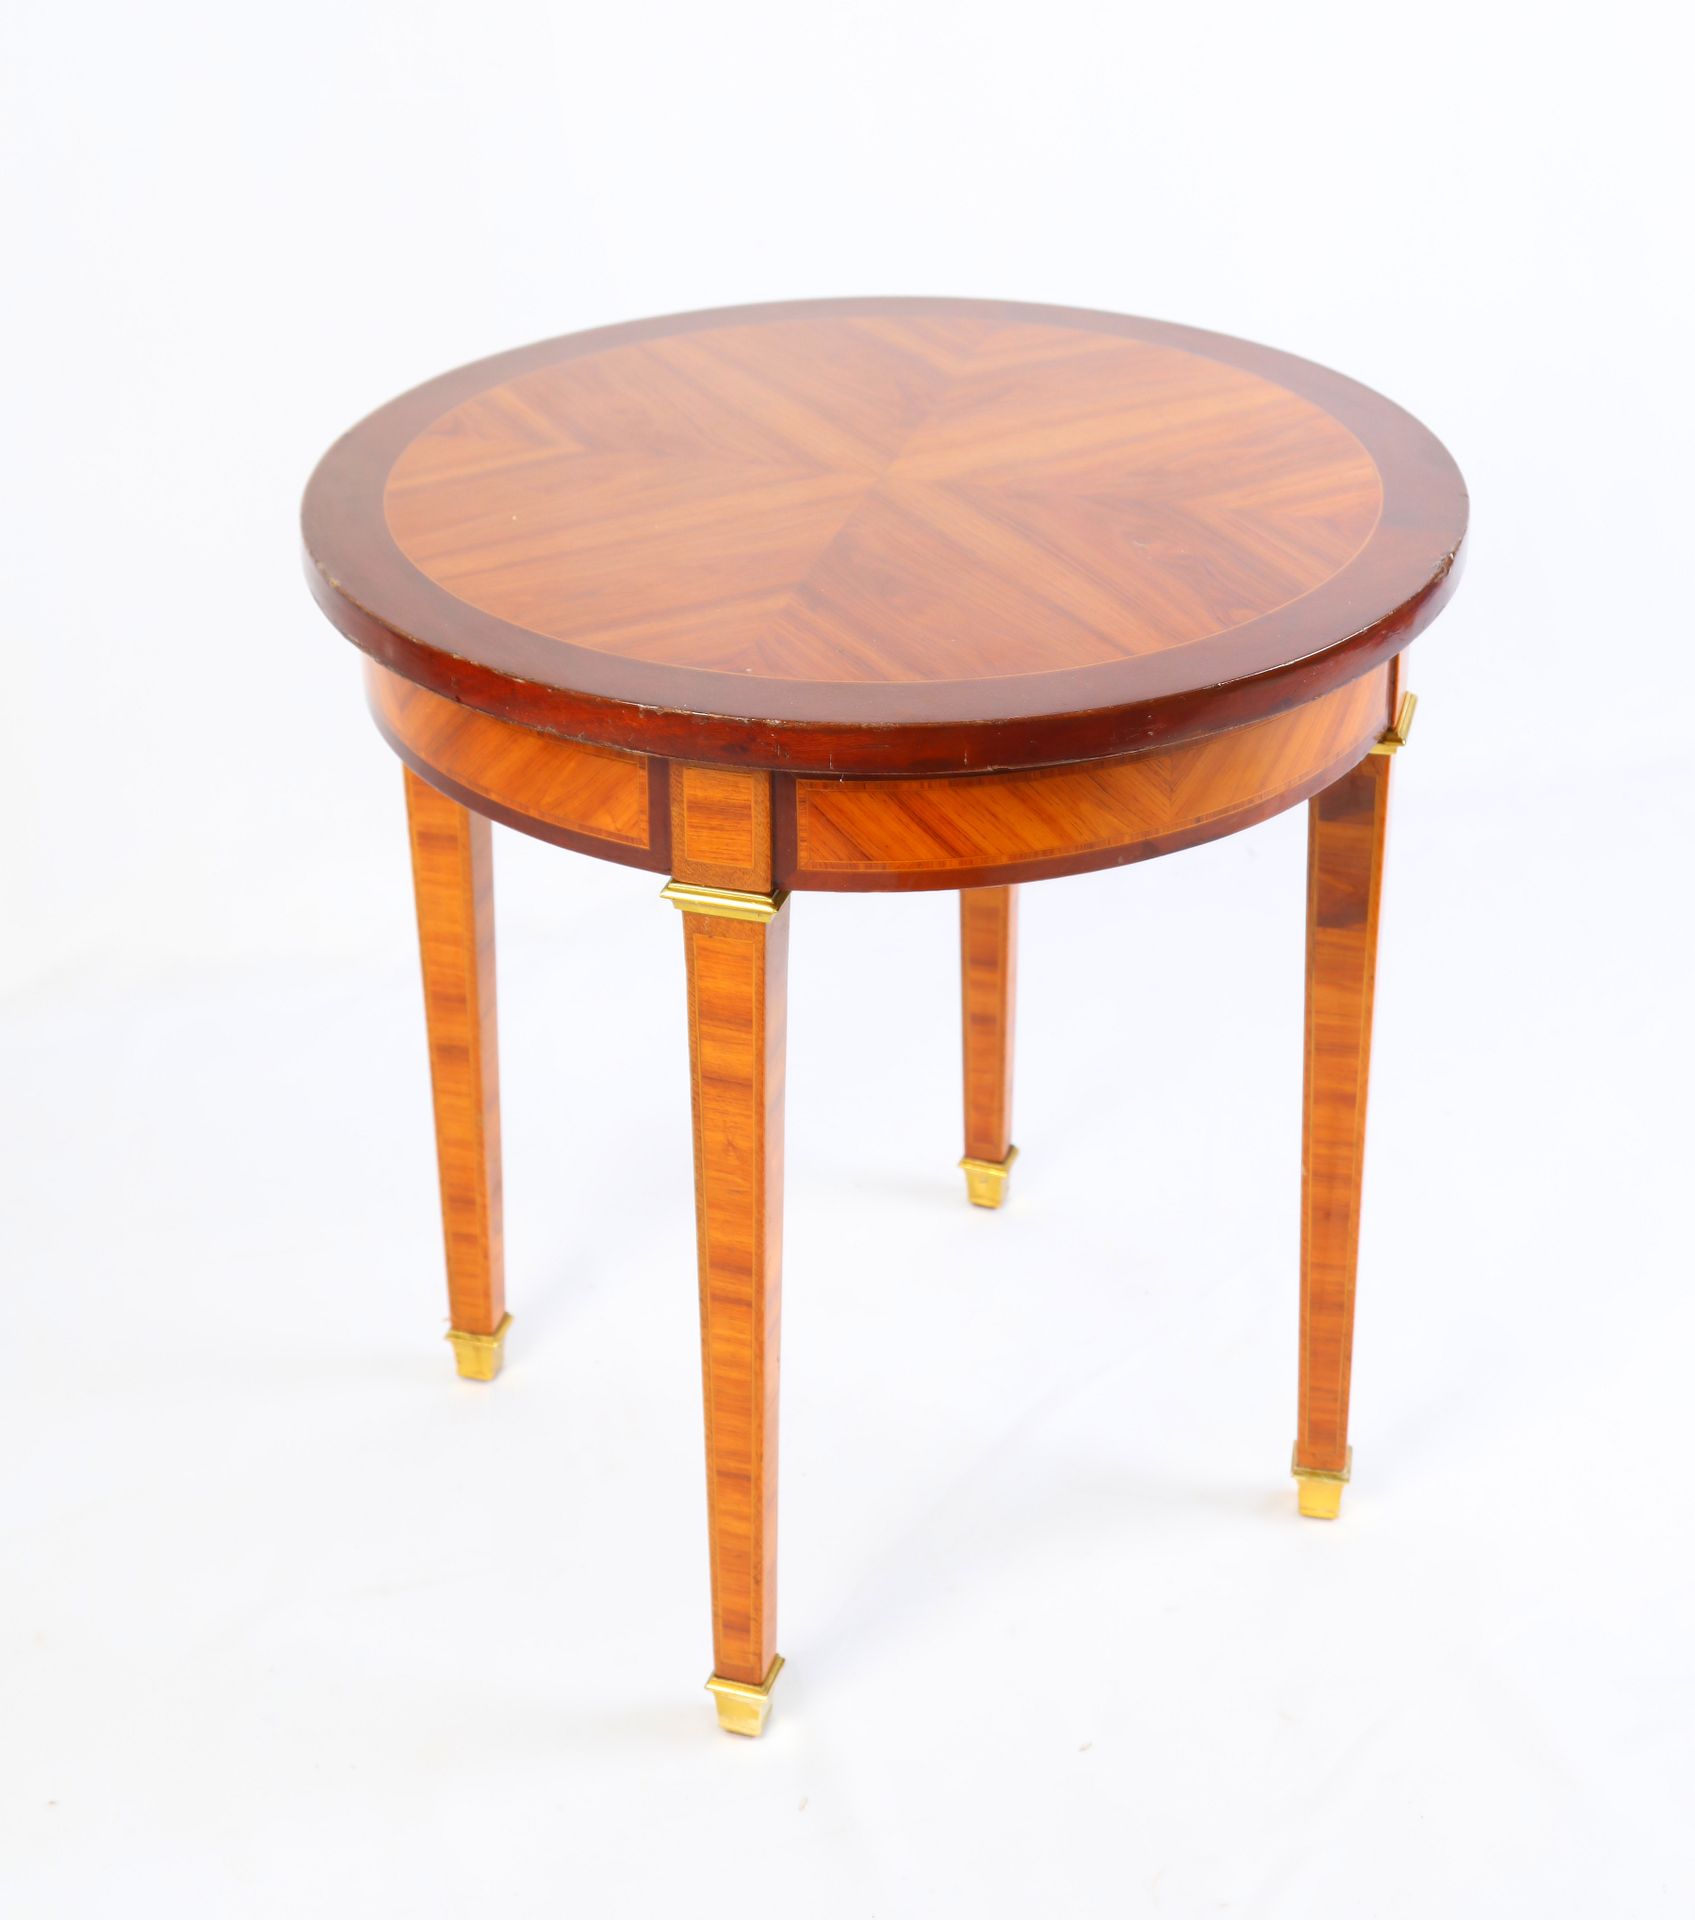 Null 浅色木饰面基座桌，纺锤形桌腿，铜质剑杆。路易十六风格。55X55